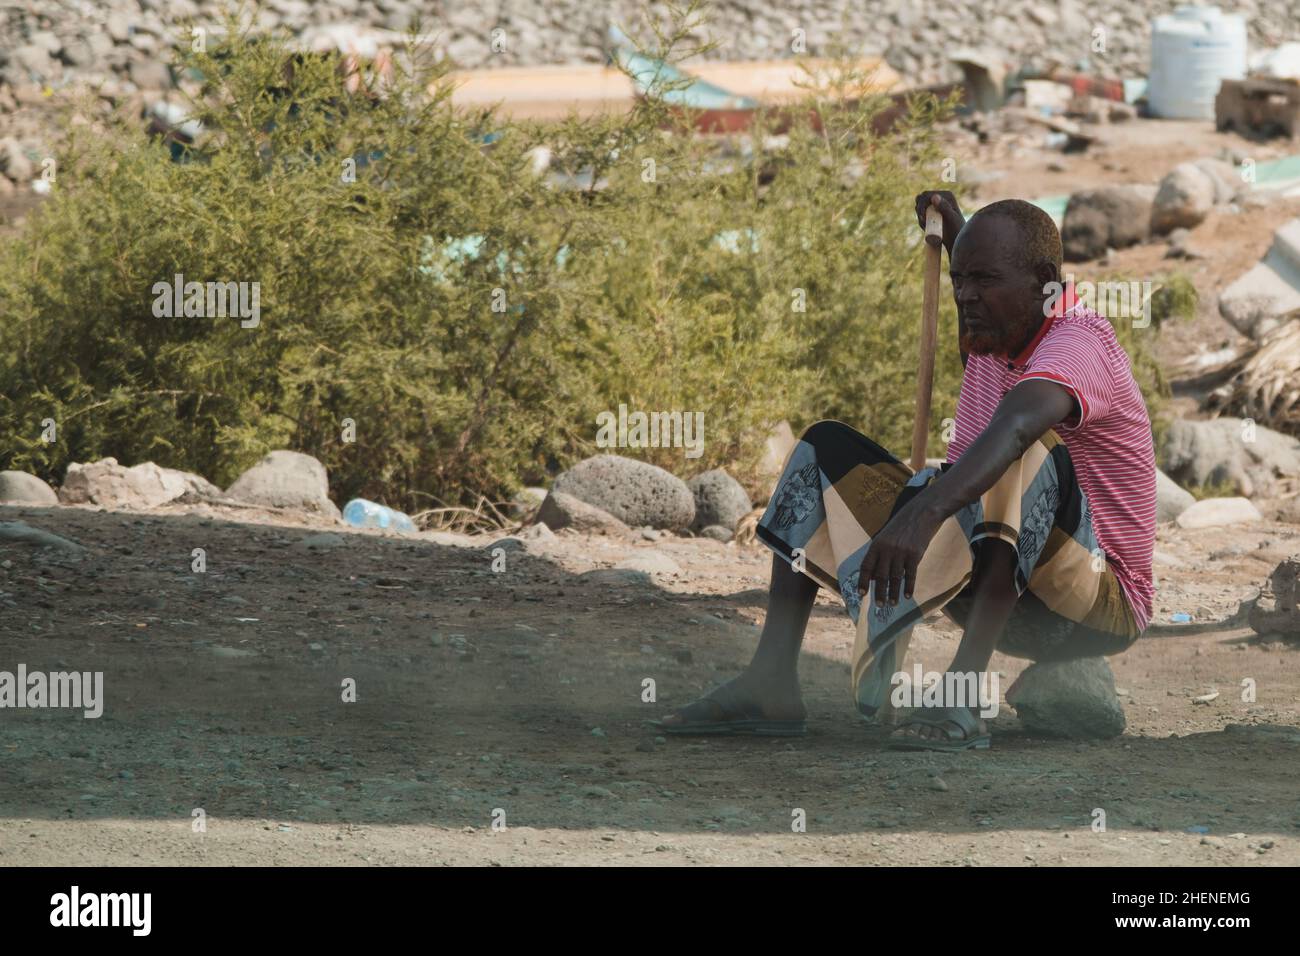 Djibouti, Djibouti - May 21, 2021: A Djiboutian man sitting on a stone. Editorial shot in Djibouti. Stock Photo